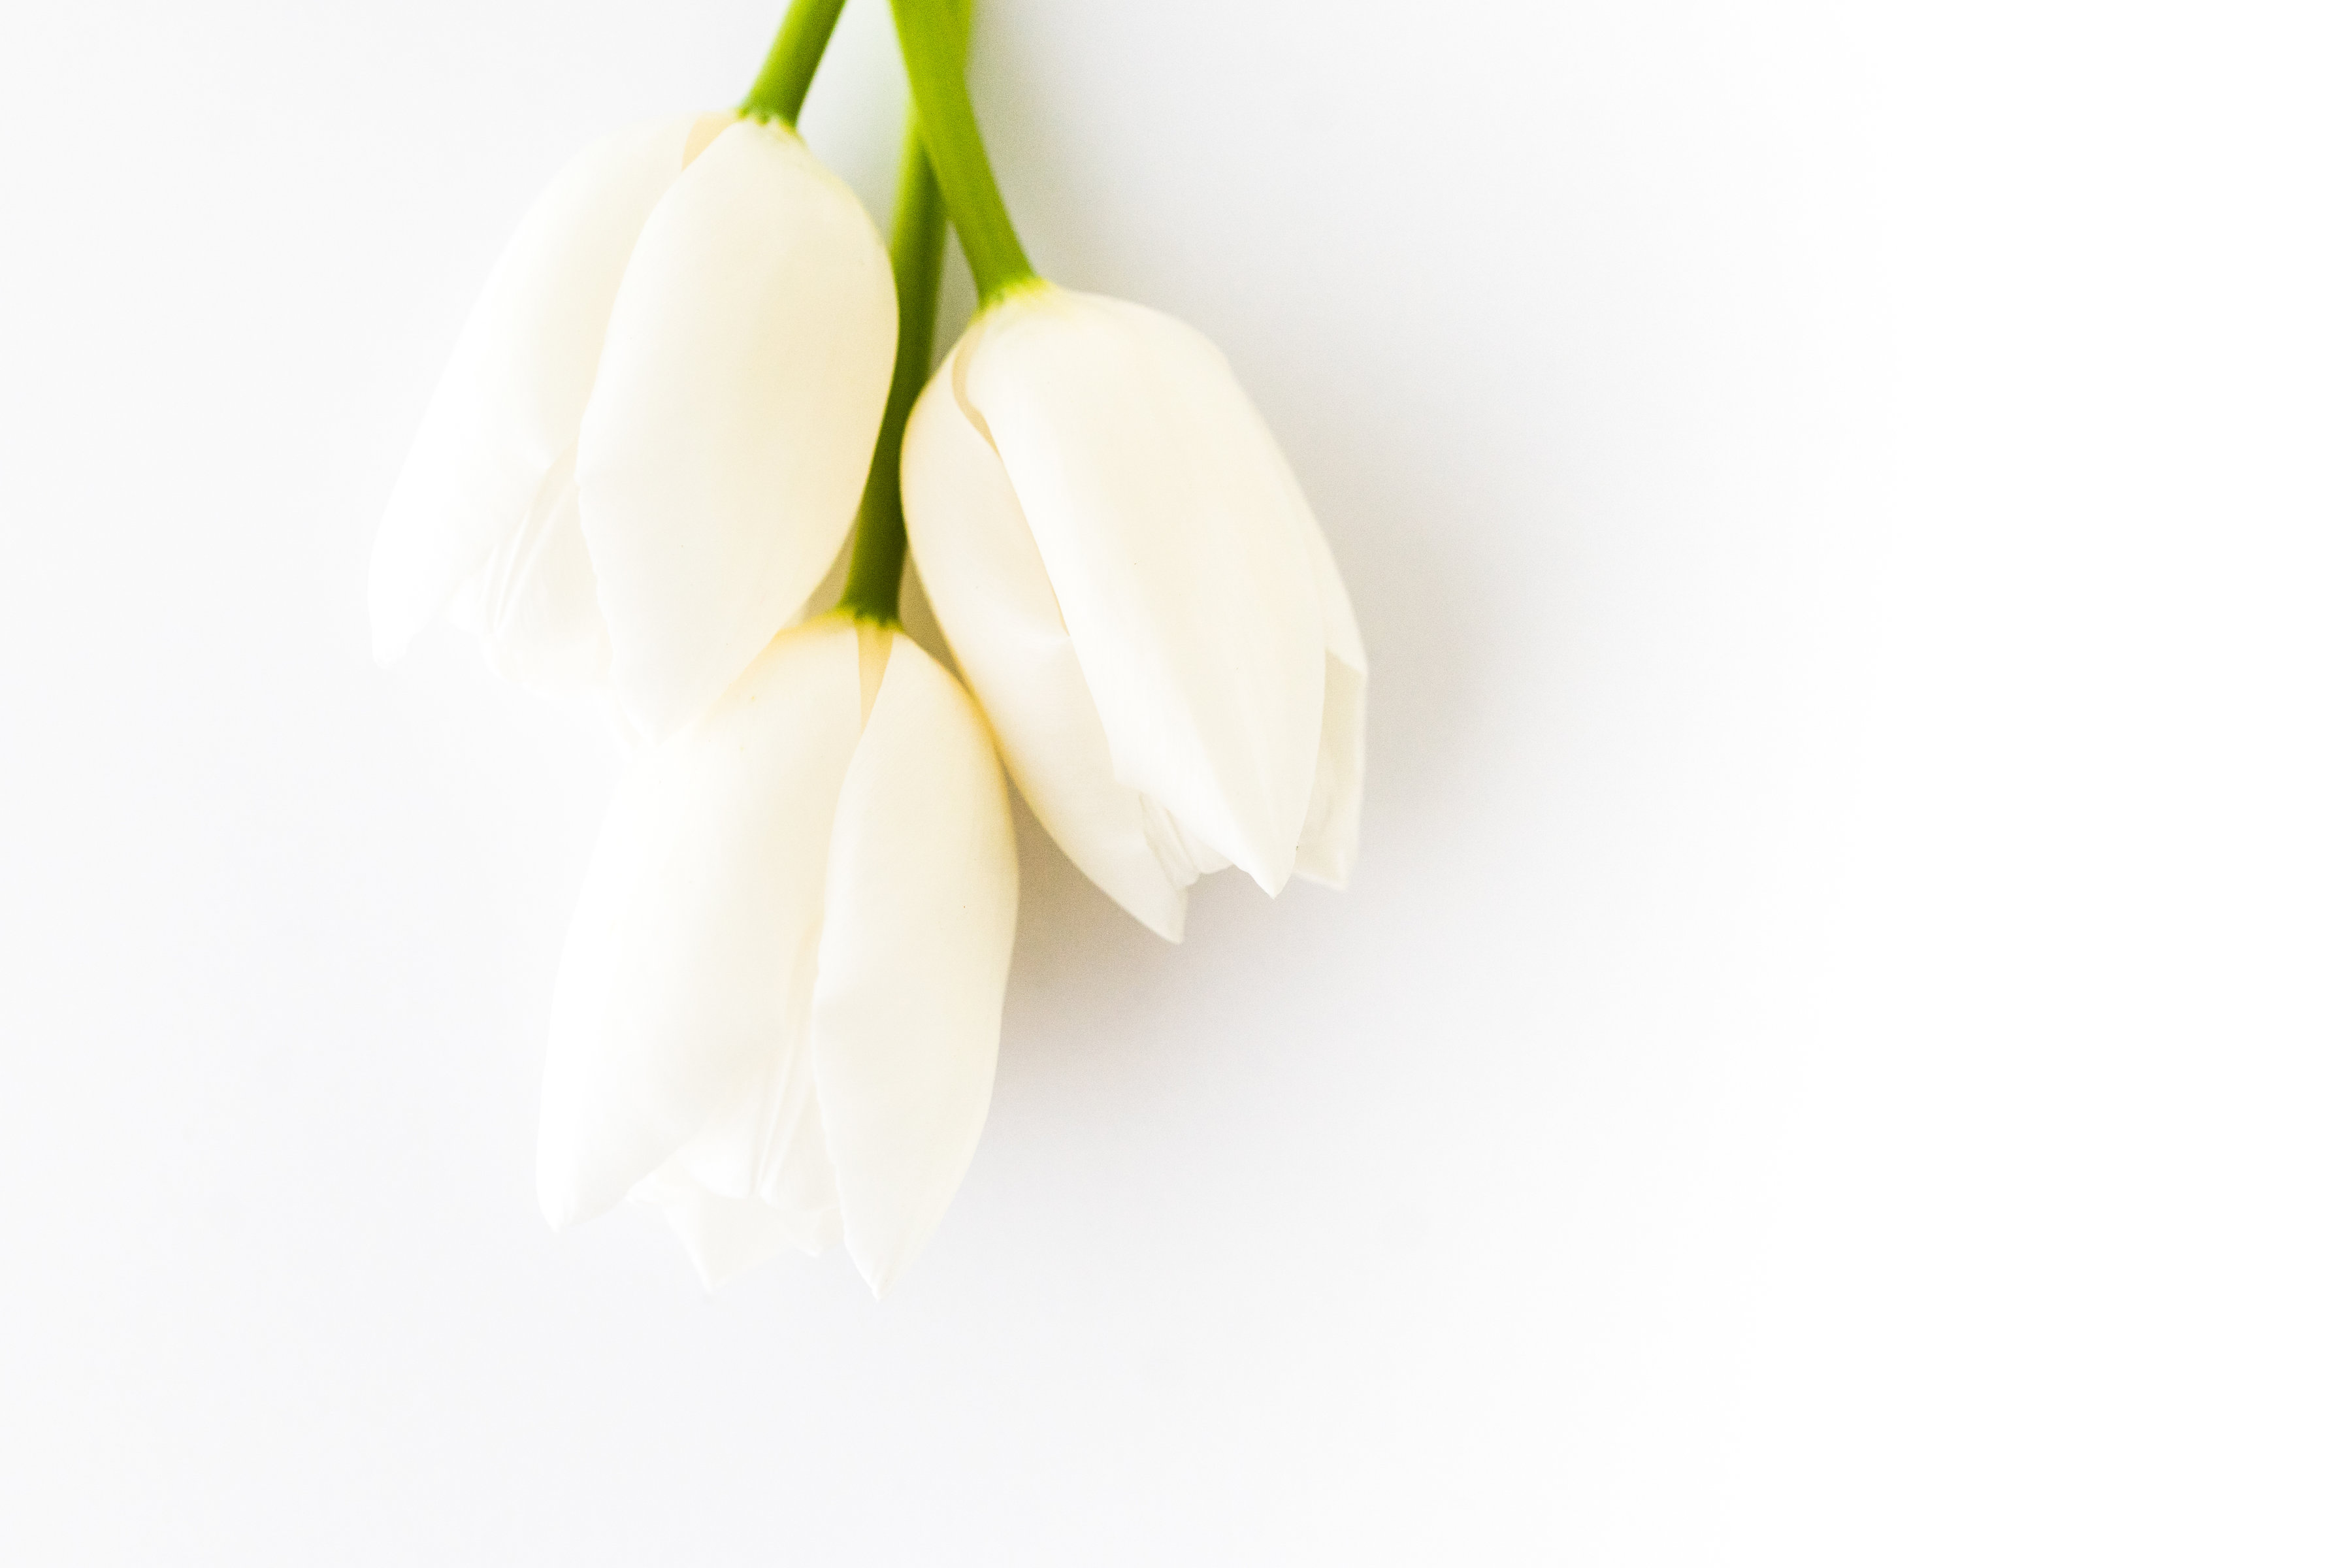 Three White Tulips